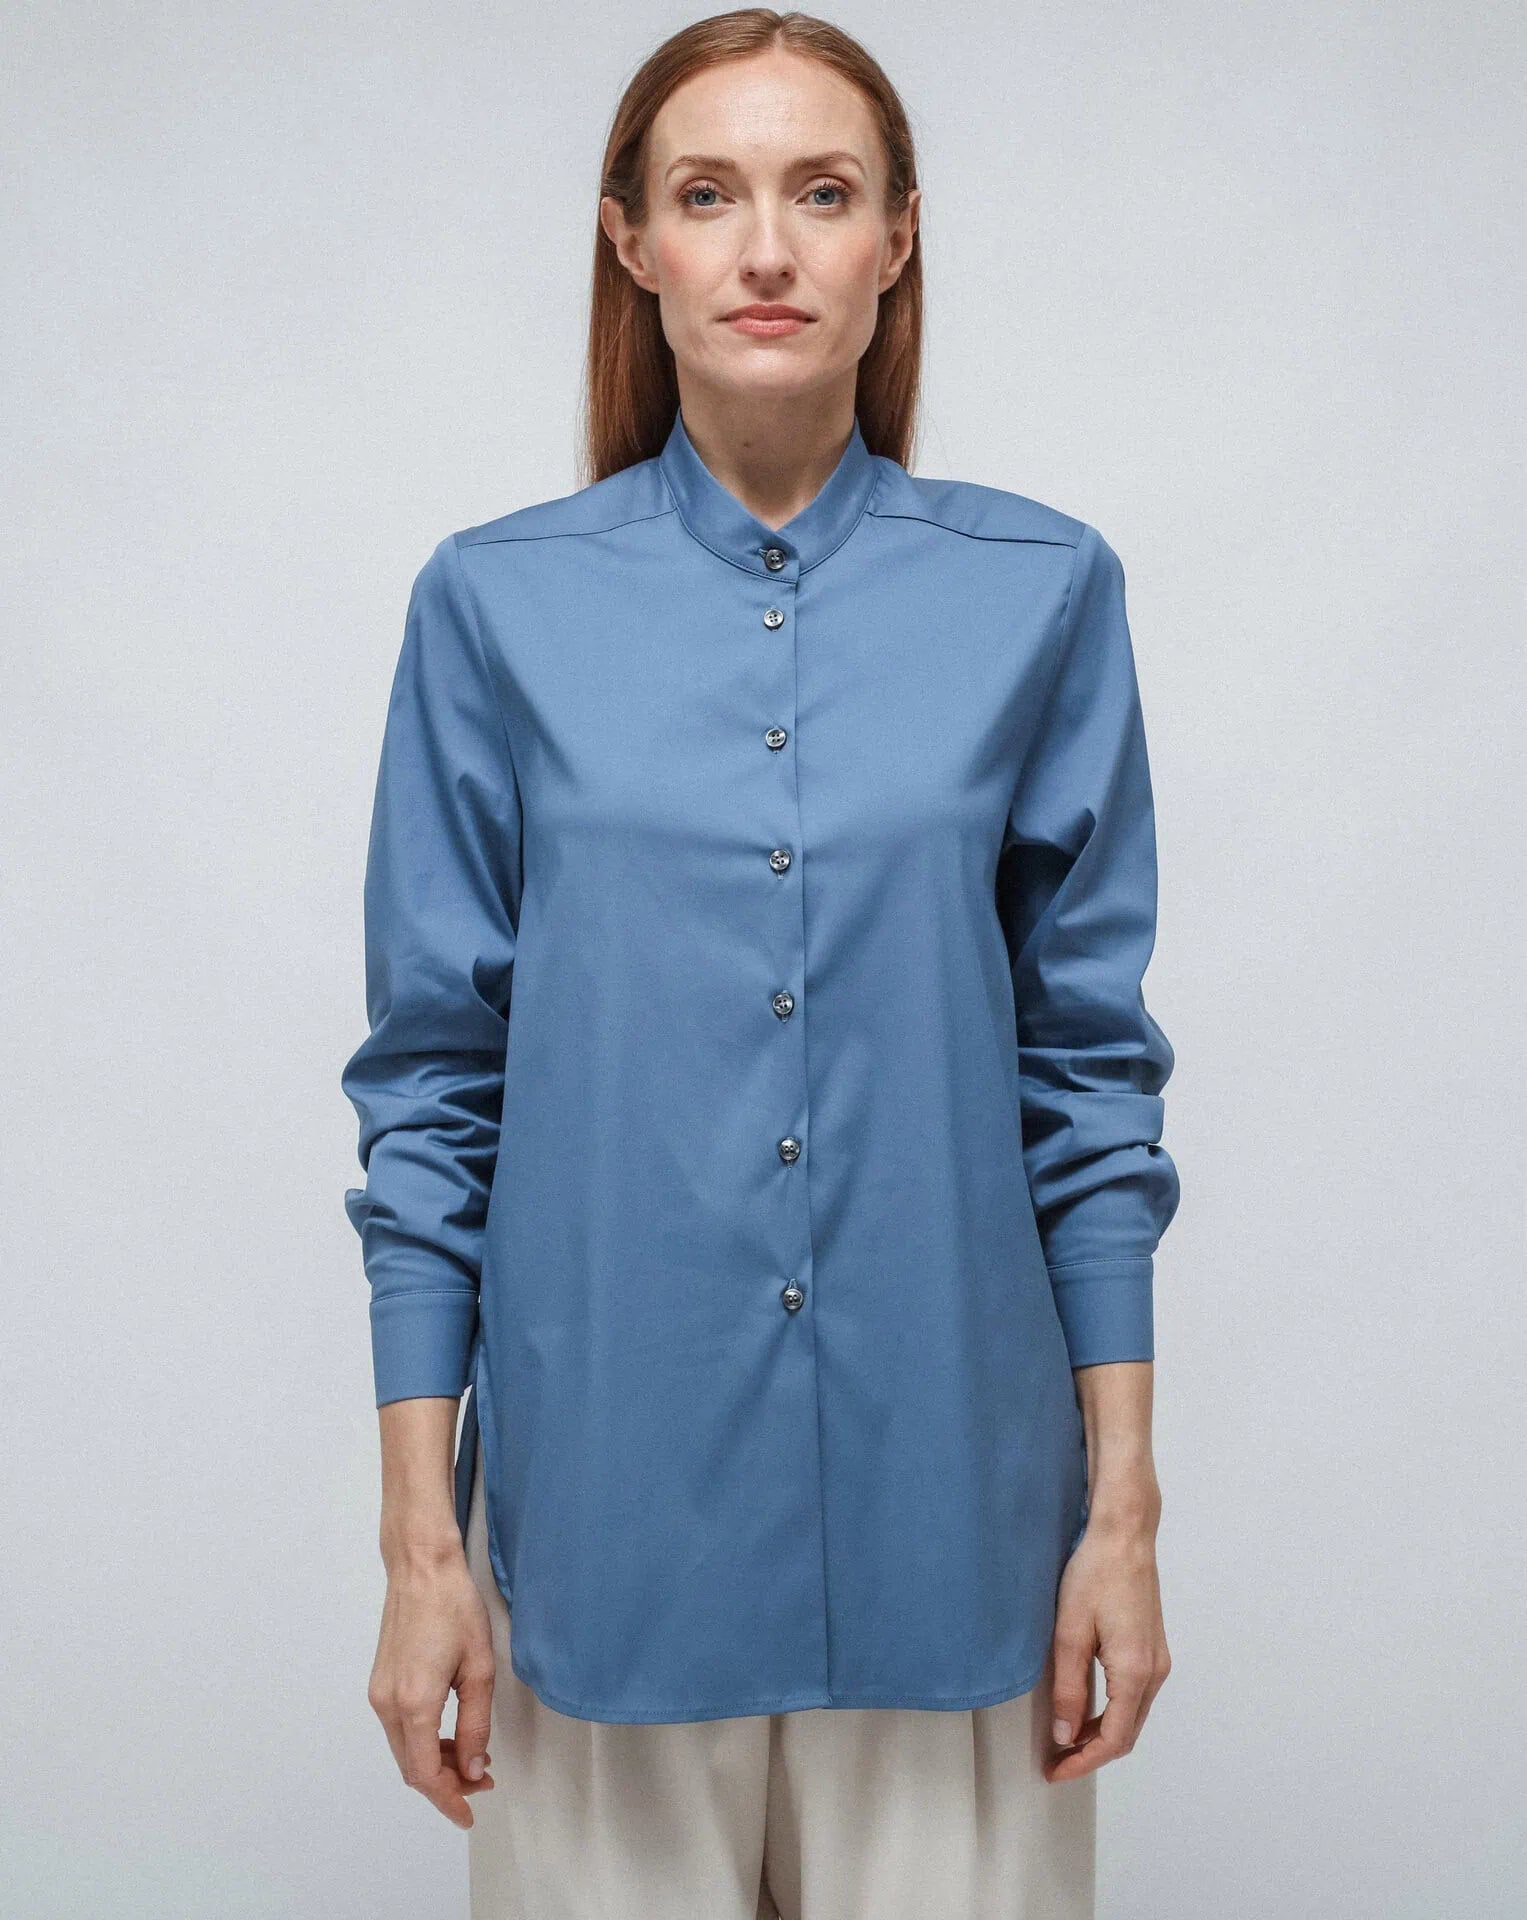 Light Blue Long Korean Shirt